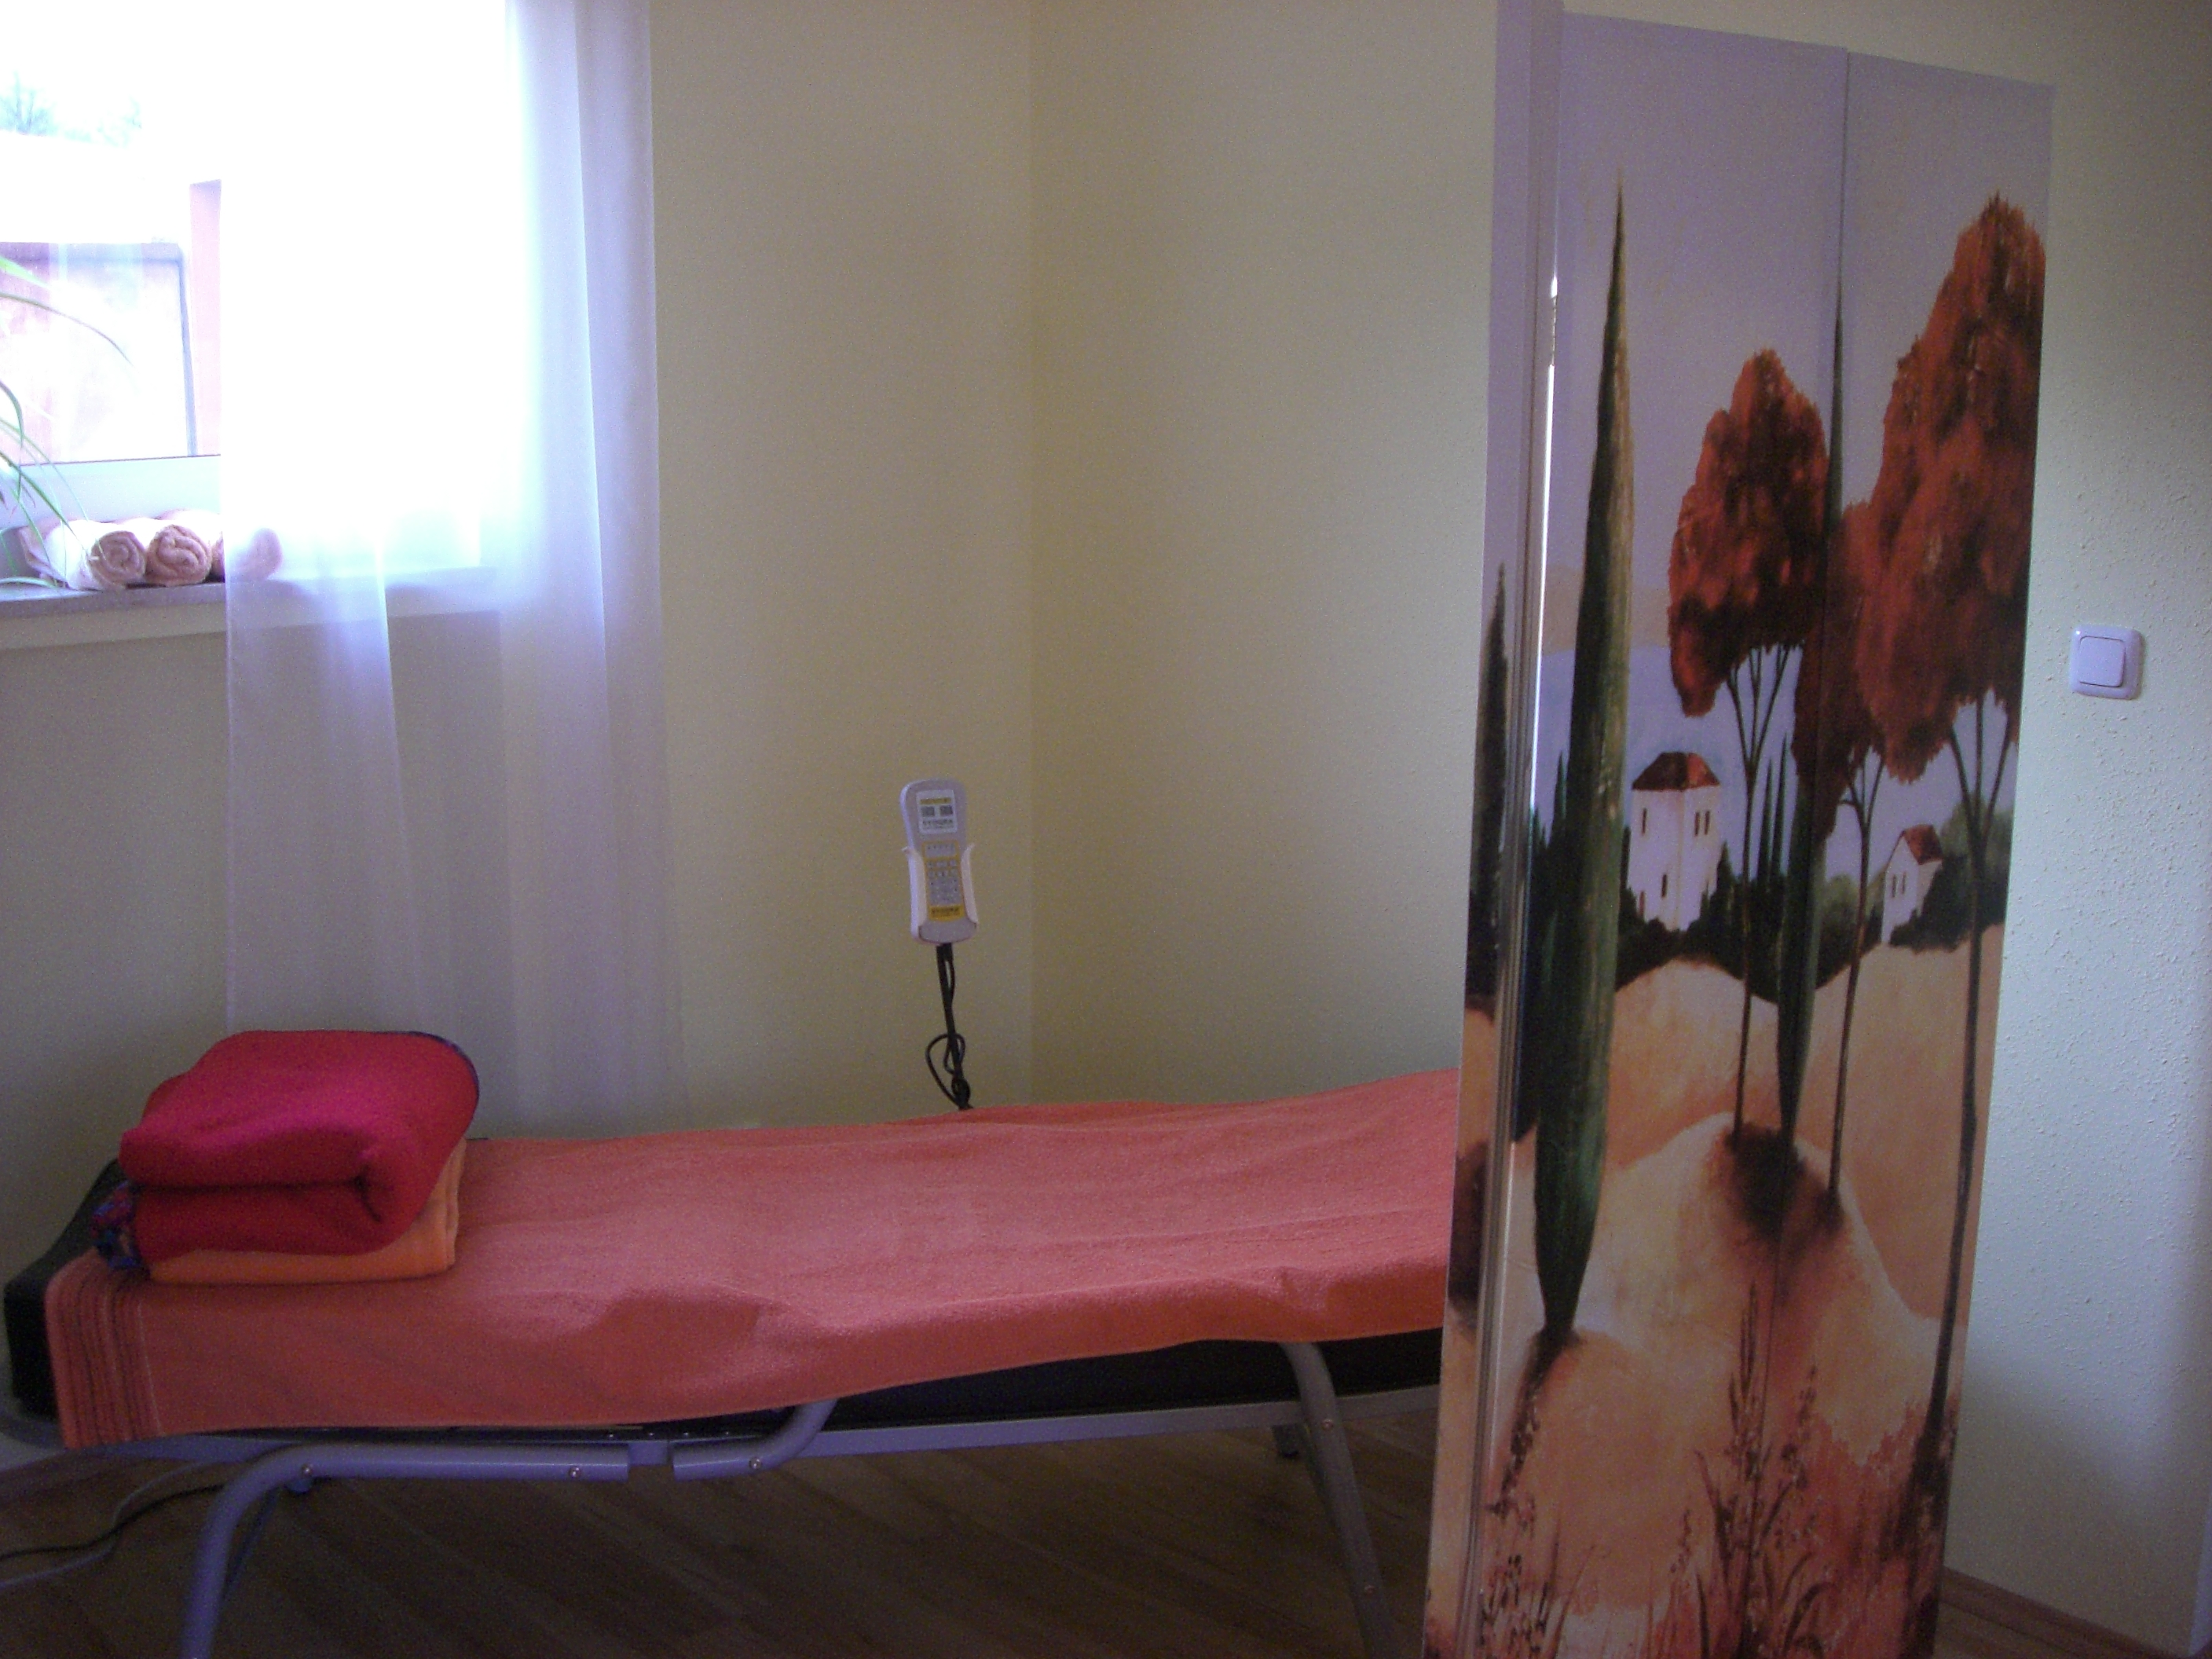 Die Jade Massage vereint das Know-How traditioneller fernöstlicher Entspannungsmethoden mit westlichem Verfahren der Infrarotstrahlung und Chiropraktik.